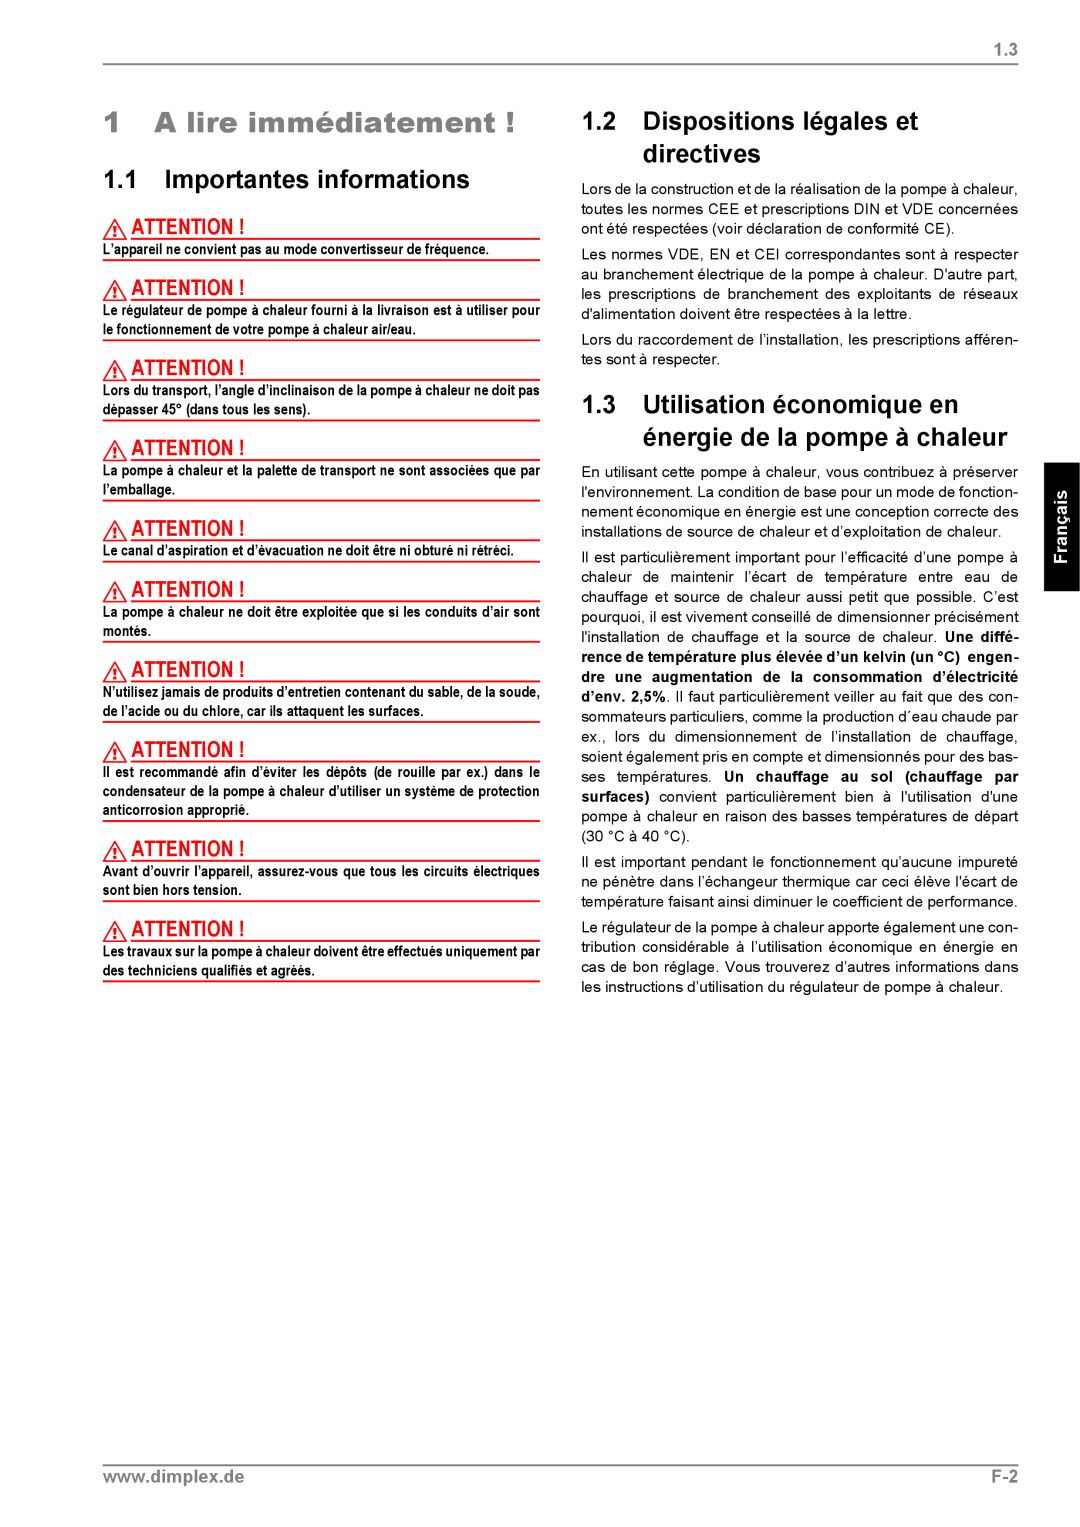 Dimplex LI 11MS A lire immédiatement, 1.1Importantes informations, 1.2Dispositions légales et directives, Français 